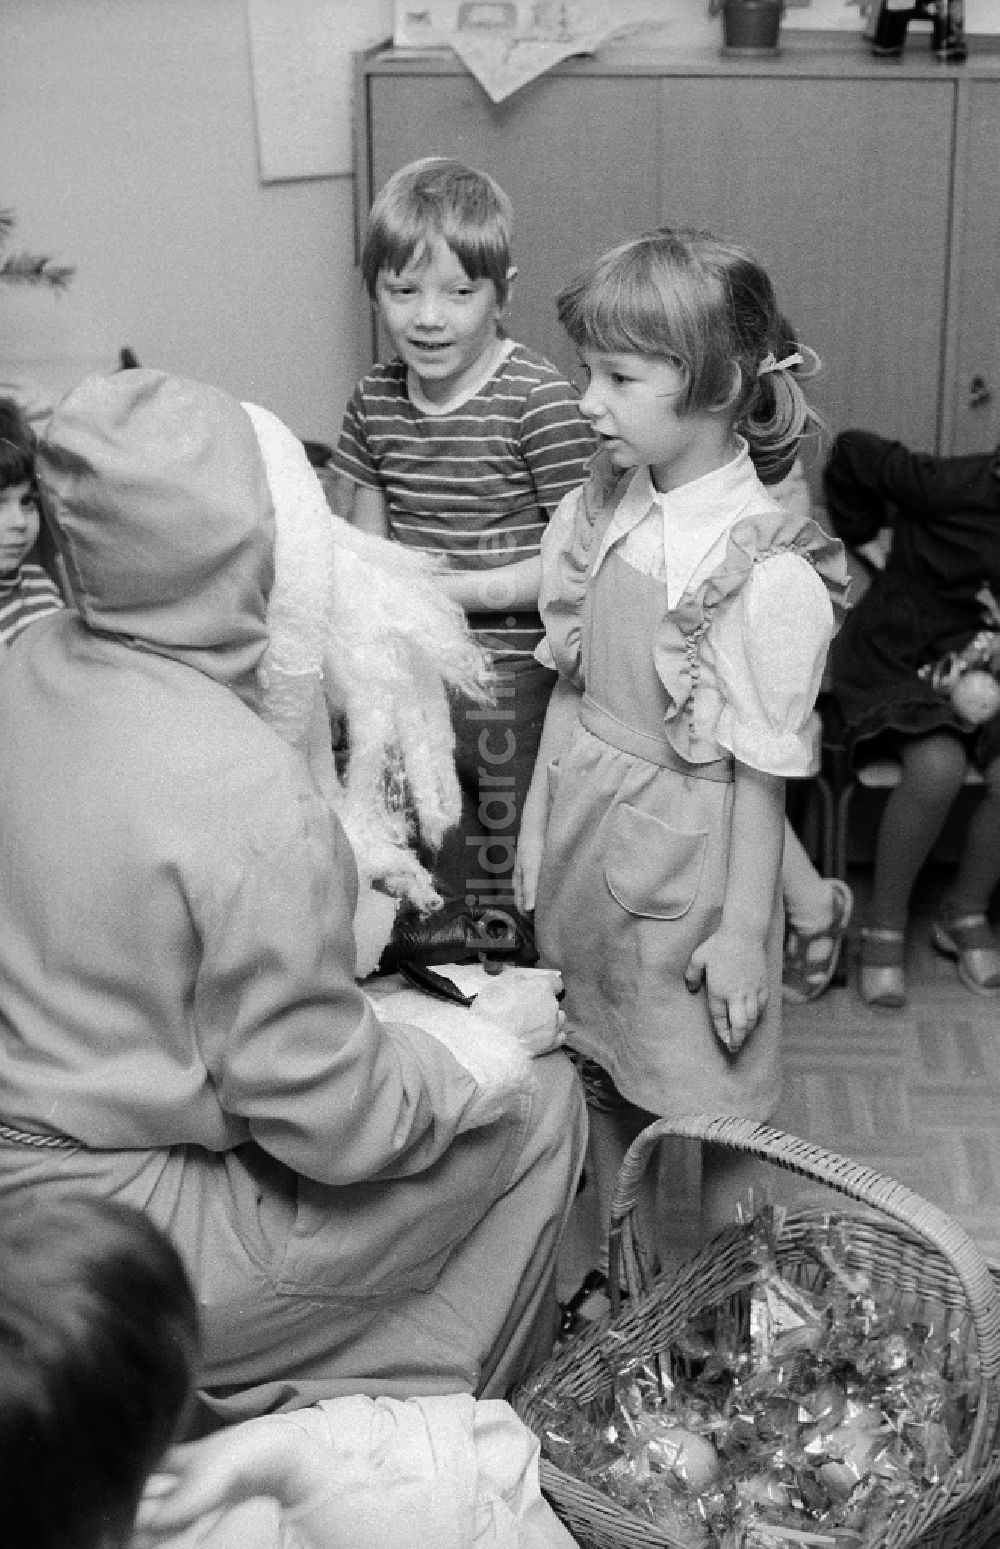 Berlin: Weihnachtsfeier im Kindergarten in Berlin, der ehemaligen Hauptstadt der DDR, Deutsche Demokratische Republik